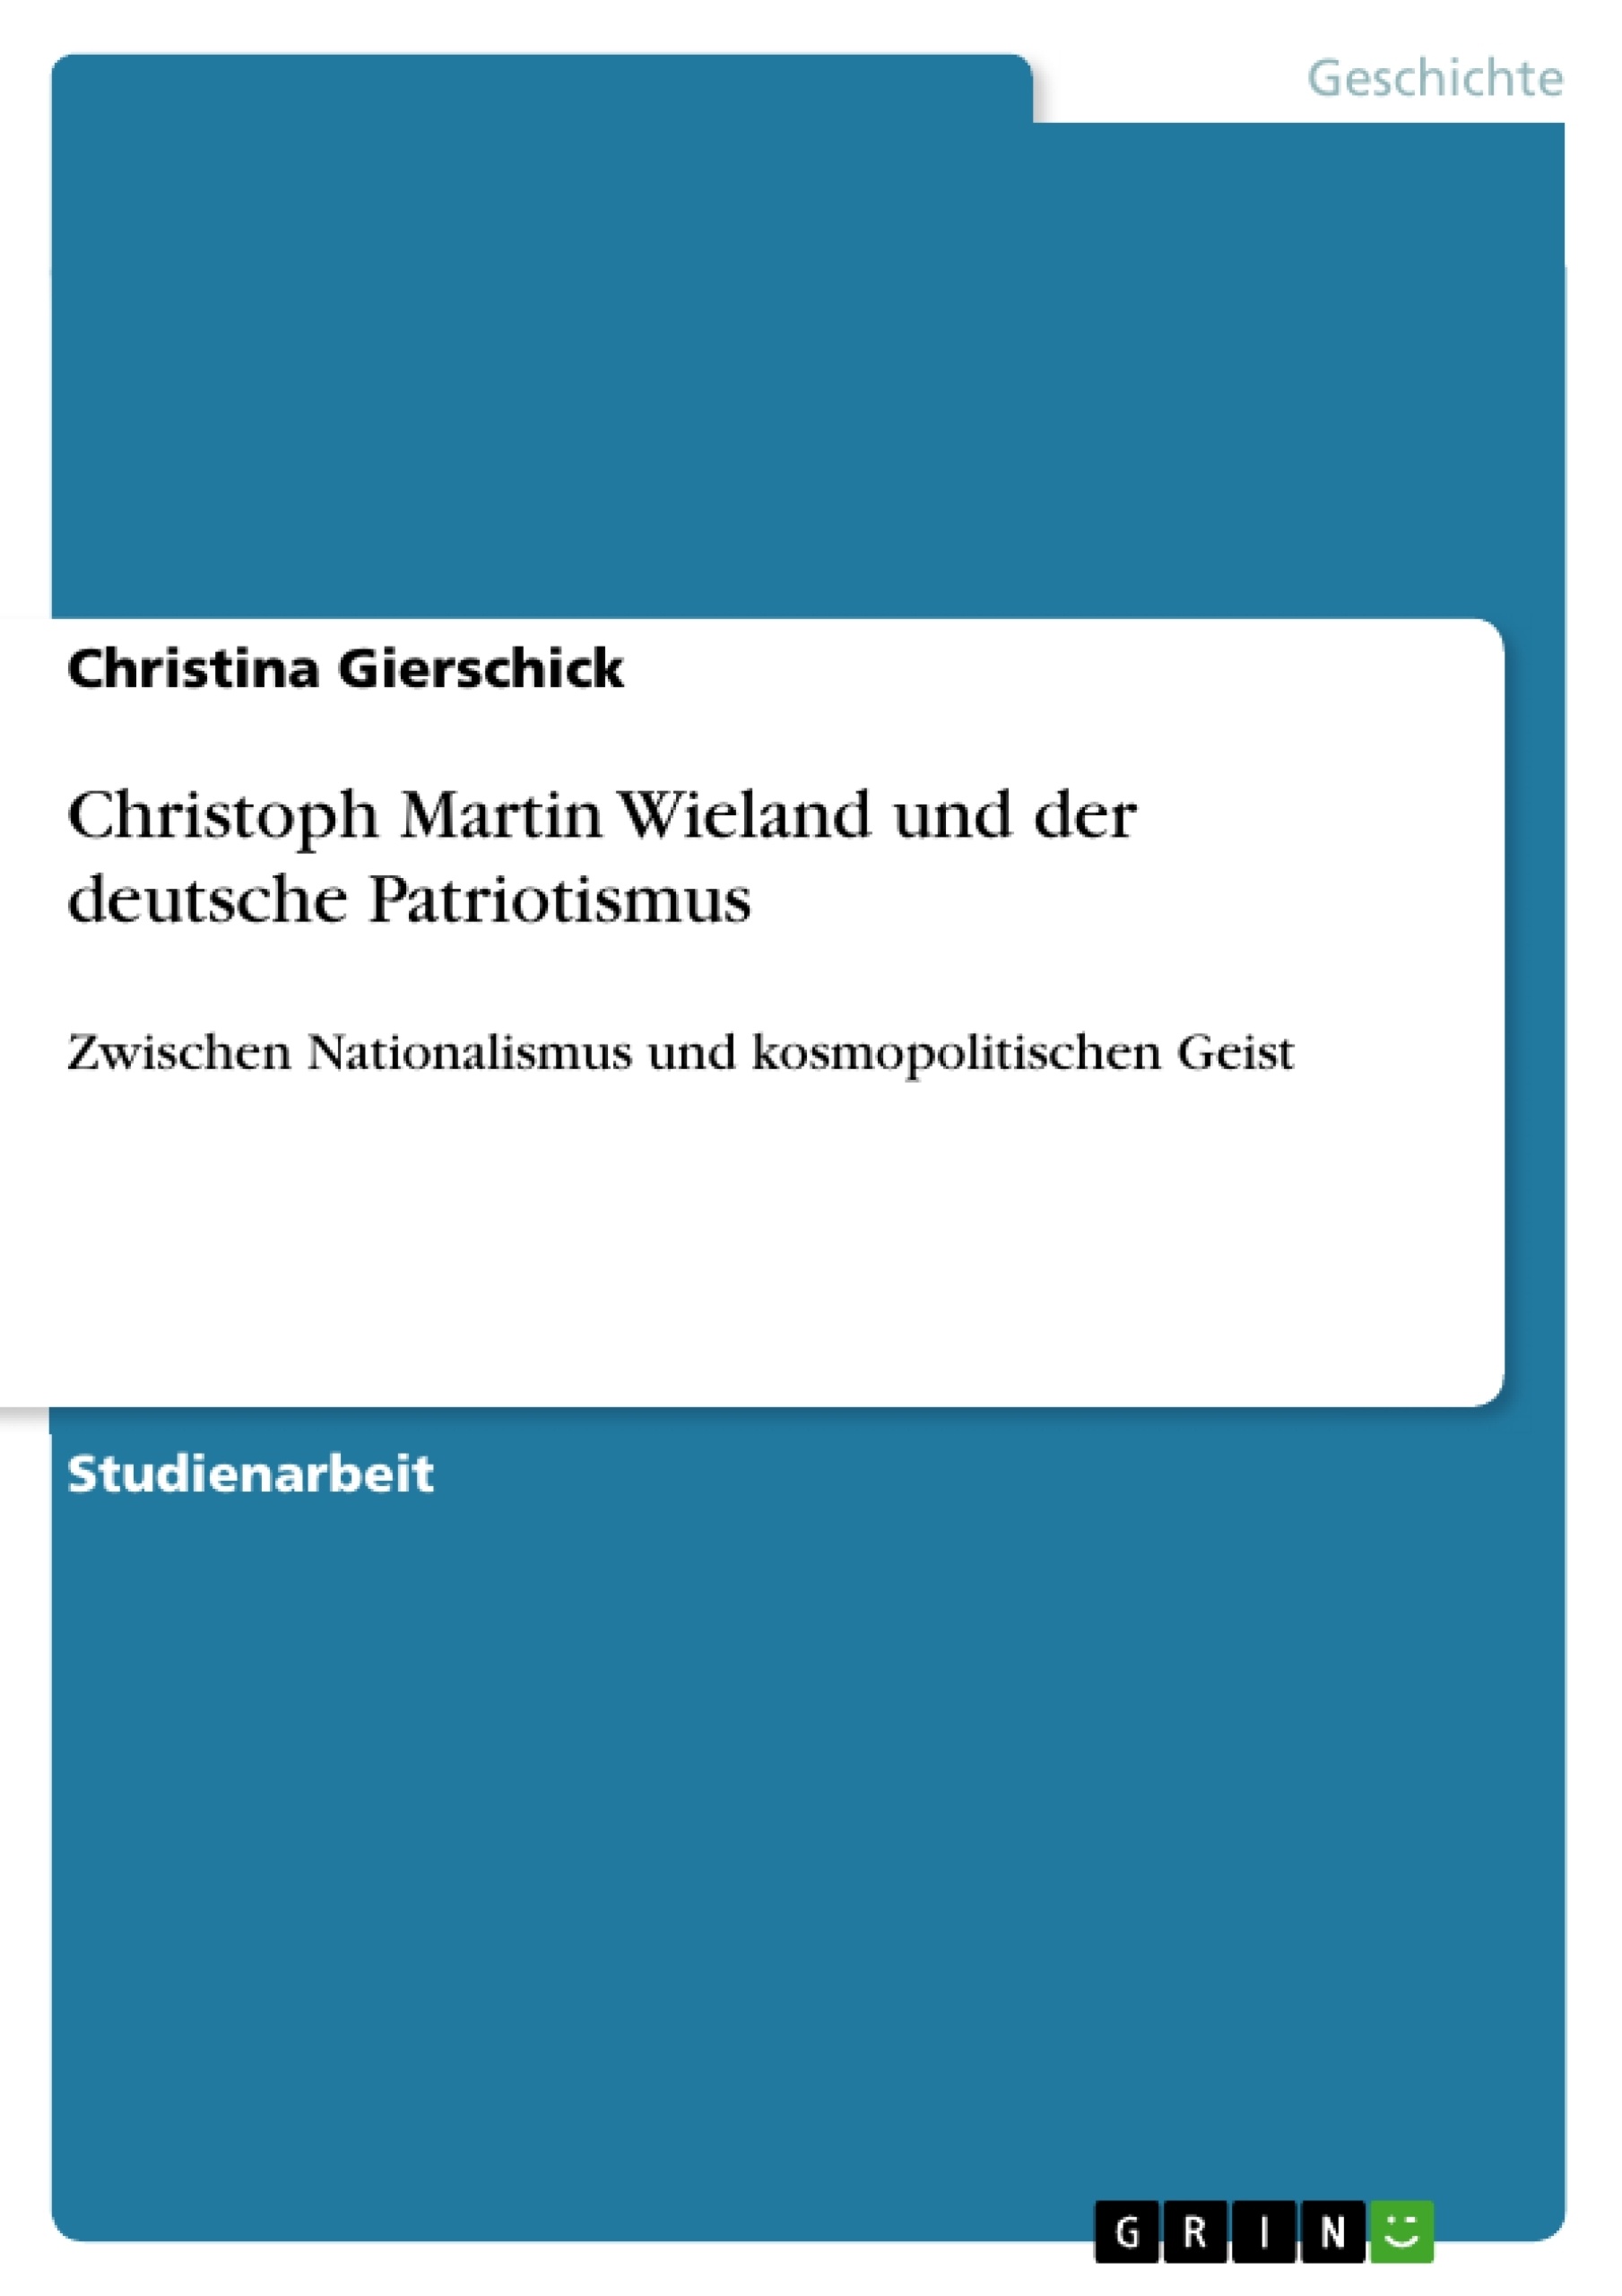 Title: Christoph Martin Wieland und der deutsche Patriotismus